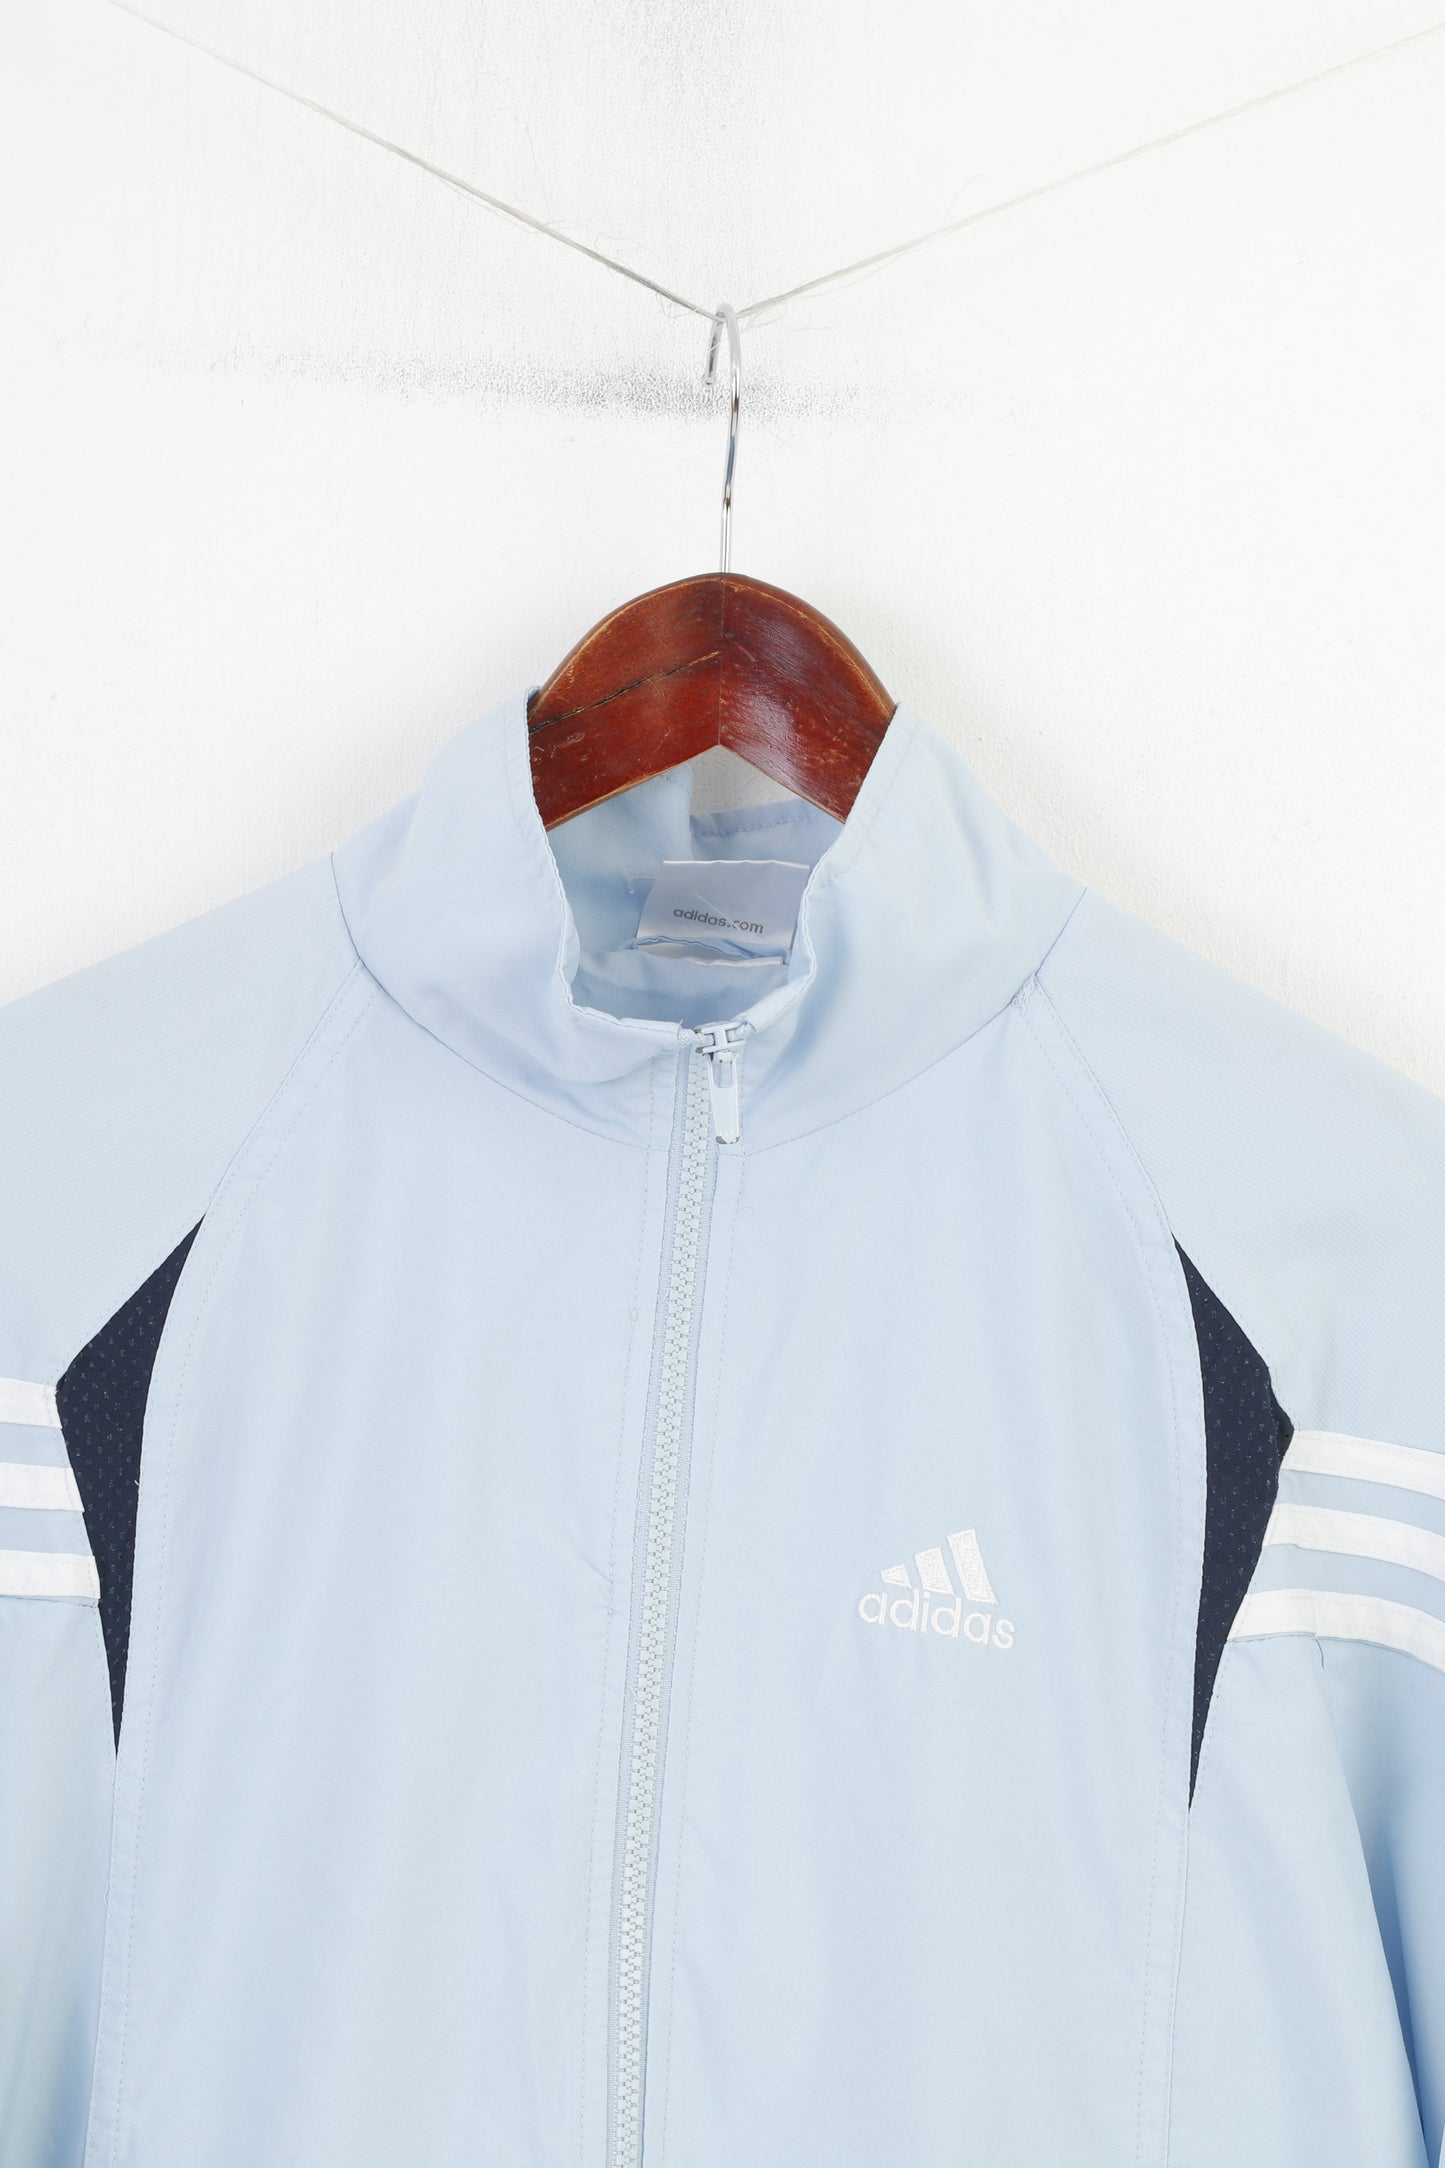 Adidas Men M Jacket Light Blue Sportswear Vtg Full Zipper Pockets Vintage 3 Stripes Outwear Top